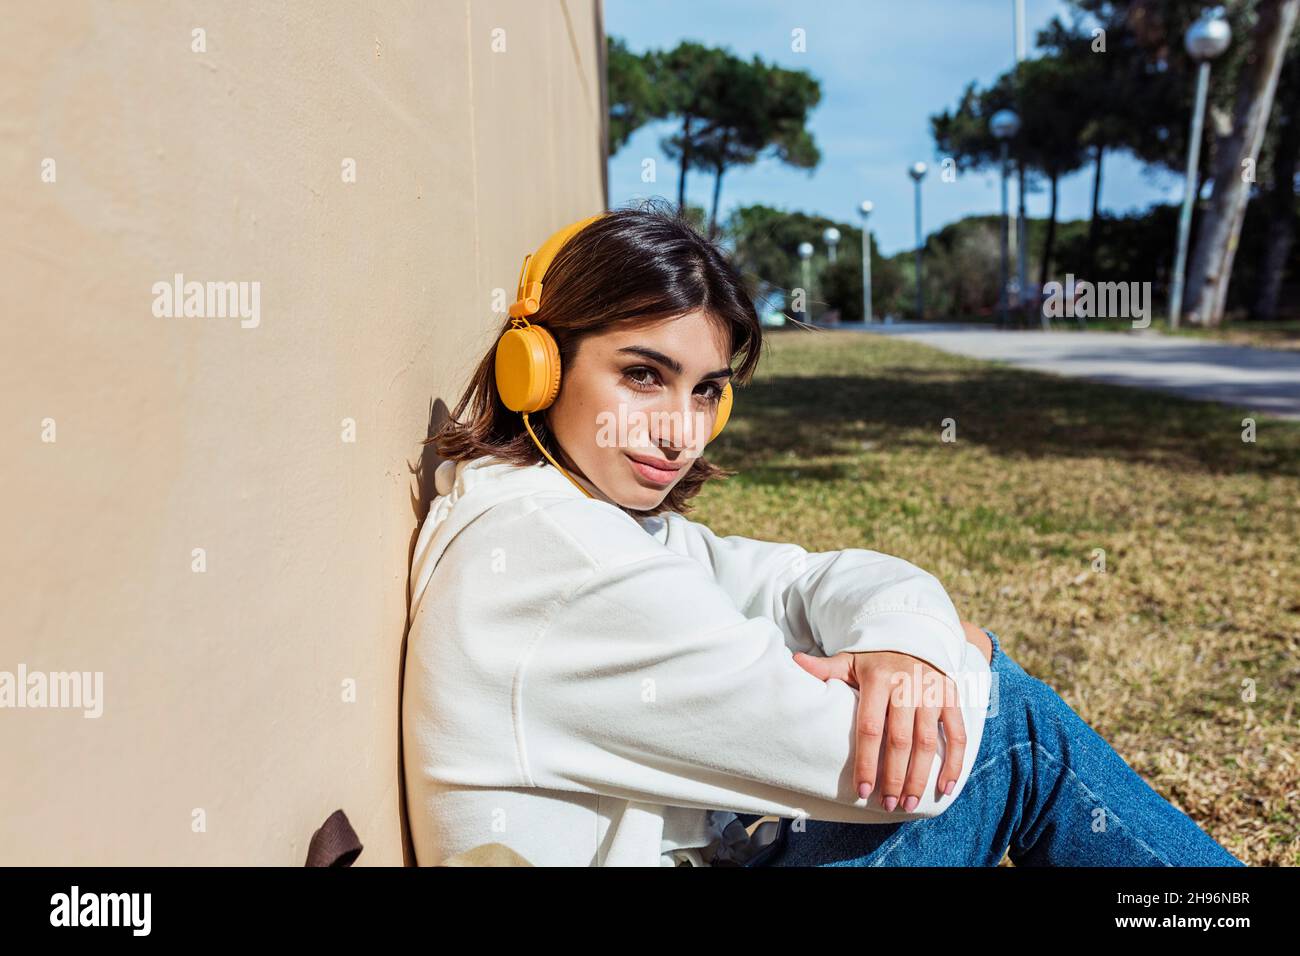 Jeune femme du millénaire écoutant de la musique avec un casque et regardant la caméra tout en étant assise dans un parc public - concept de gens du millénaire Banque D'Images